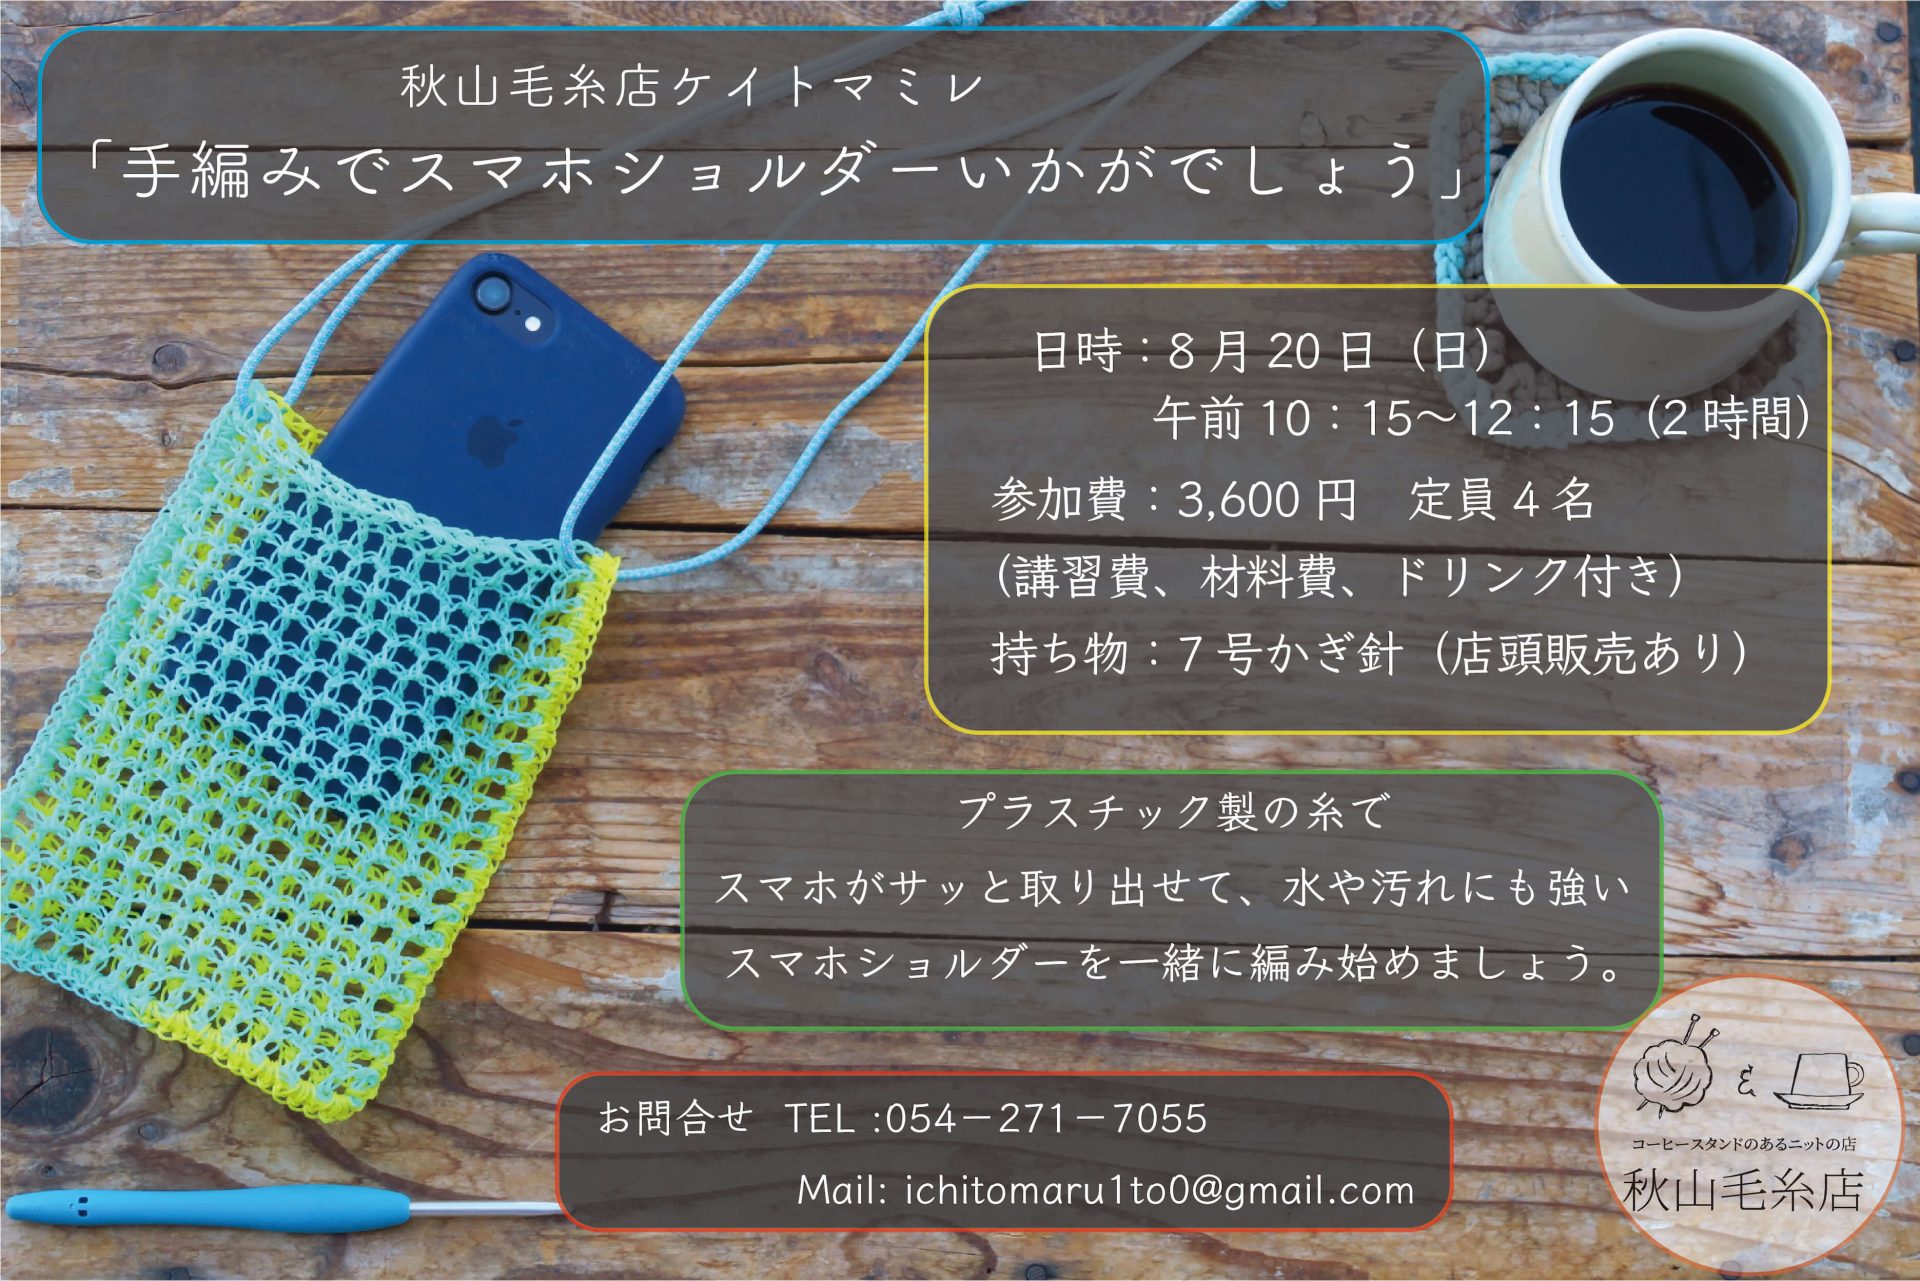 【イベント終了】秋山毛糸店ケイトマミレ「手編みのスマホショルダーいかがでしょう」